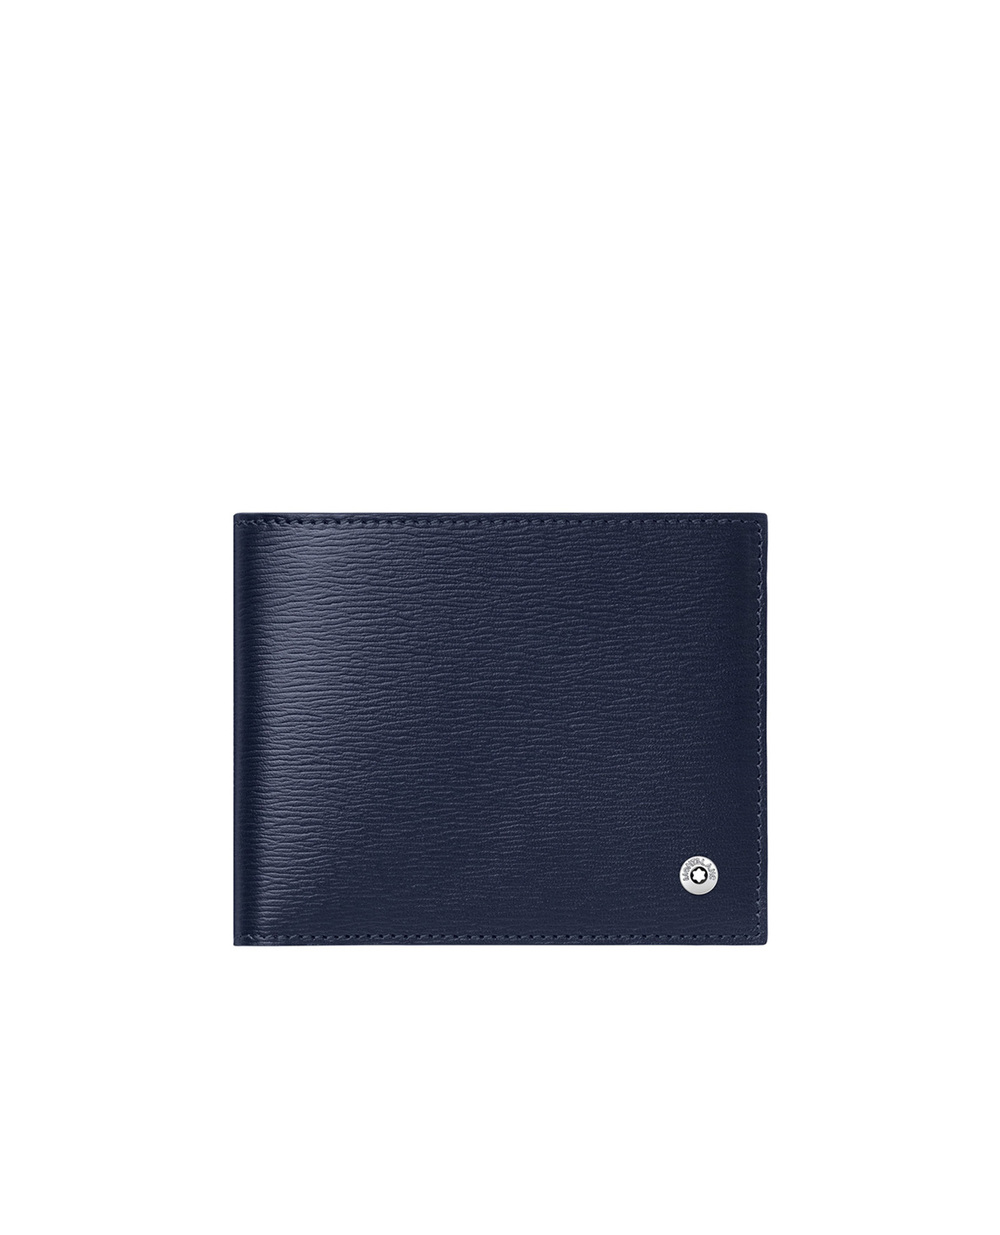 Бумажник 6сс 4810 Westside Montblanc 118653, синий цвет • Купить в интернет-магазине Kameron